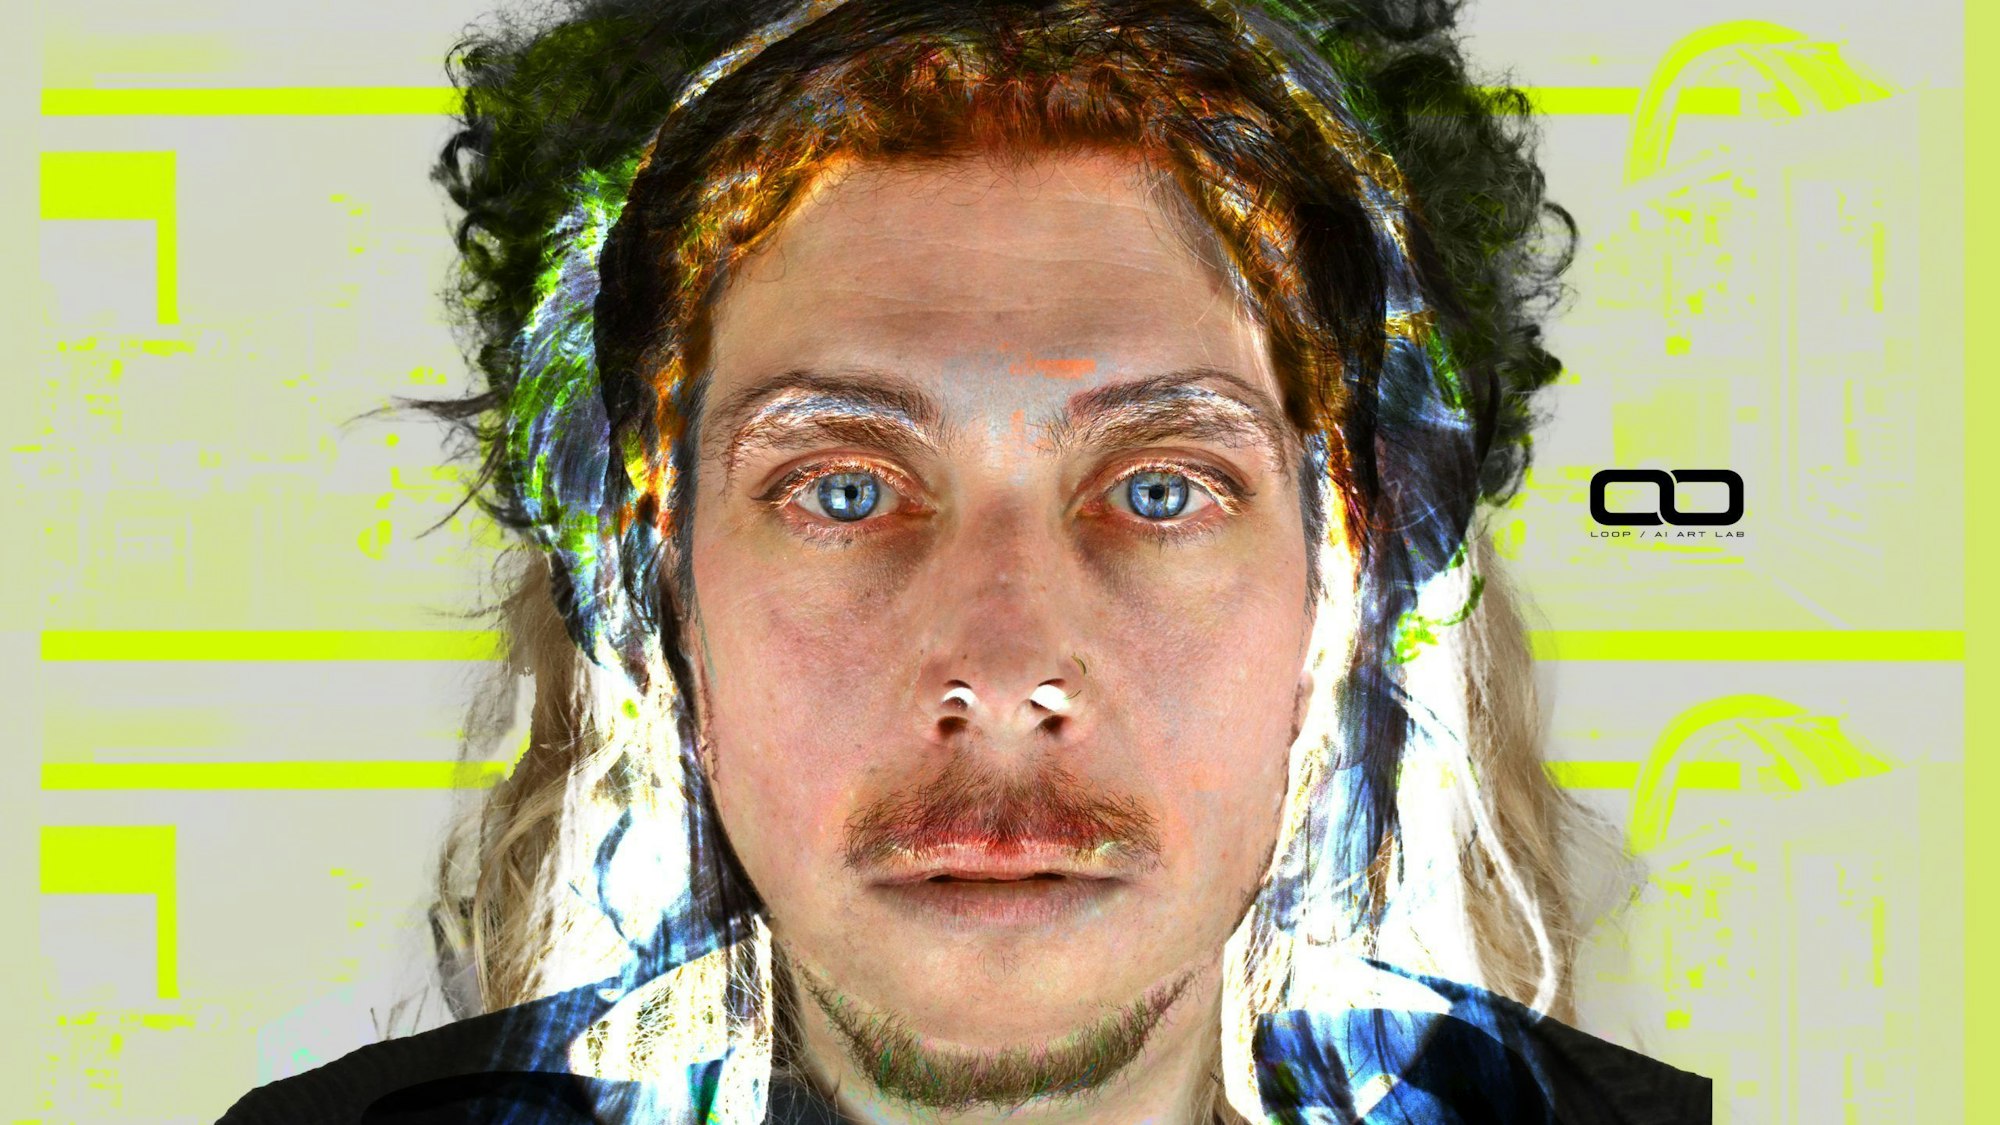 Das Bild zeigt ein Porträt eines Mannes mit Schnurbart und blauen Augen. Der Hintergrund ist grau mit computerhaften neongelben Akzenten. Es wirkt wie ein künstlich erzeugtes Bild.